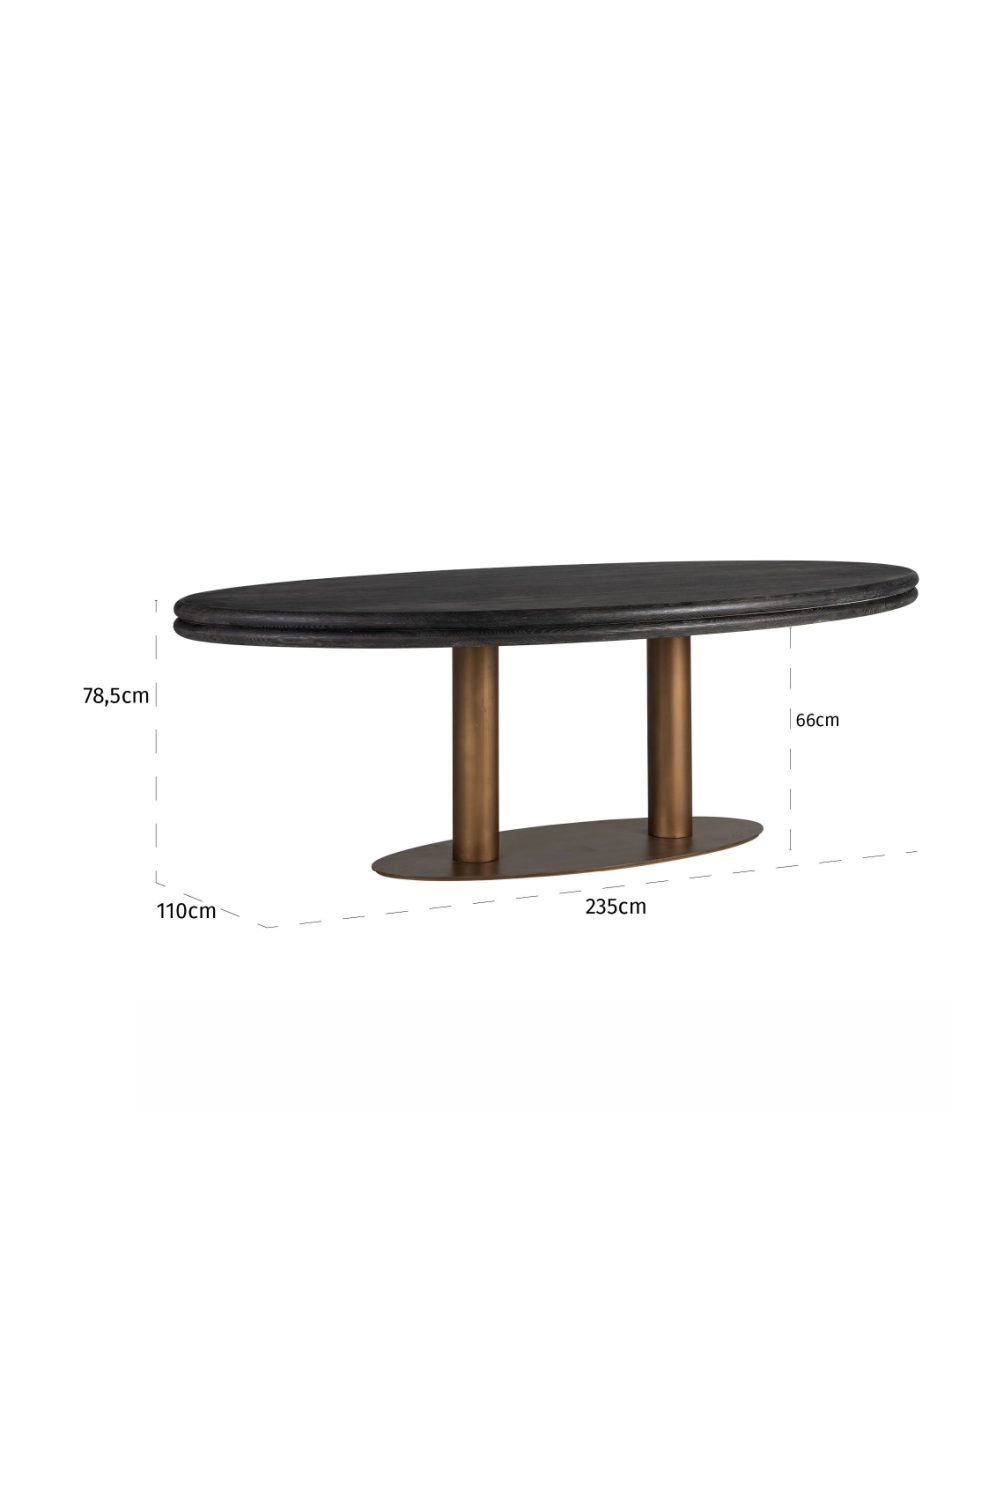 Oval Oak Dining Table | OROA Macaron | Oroa.com